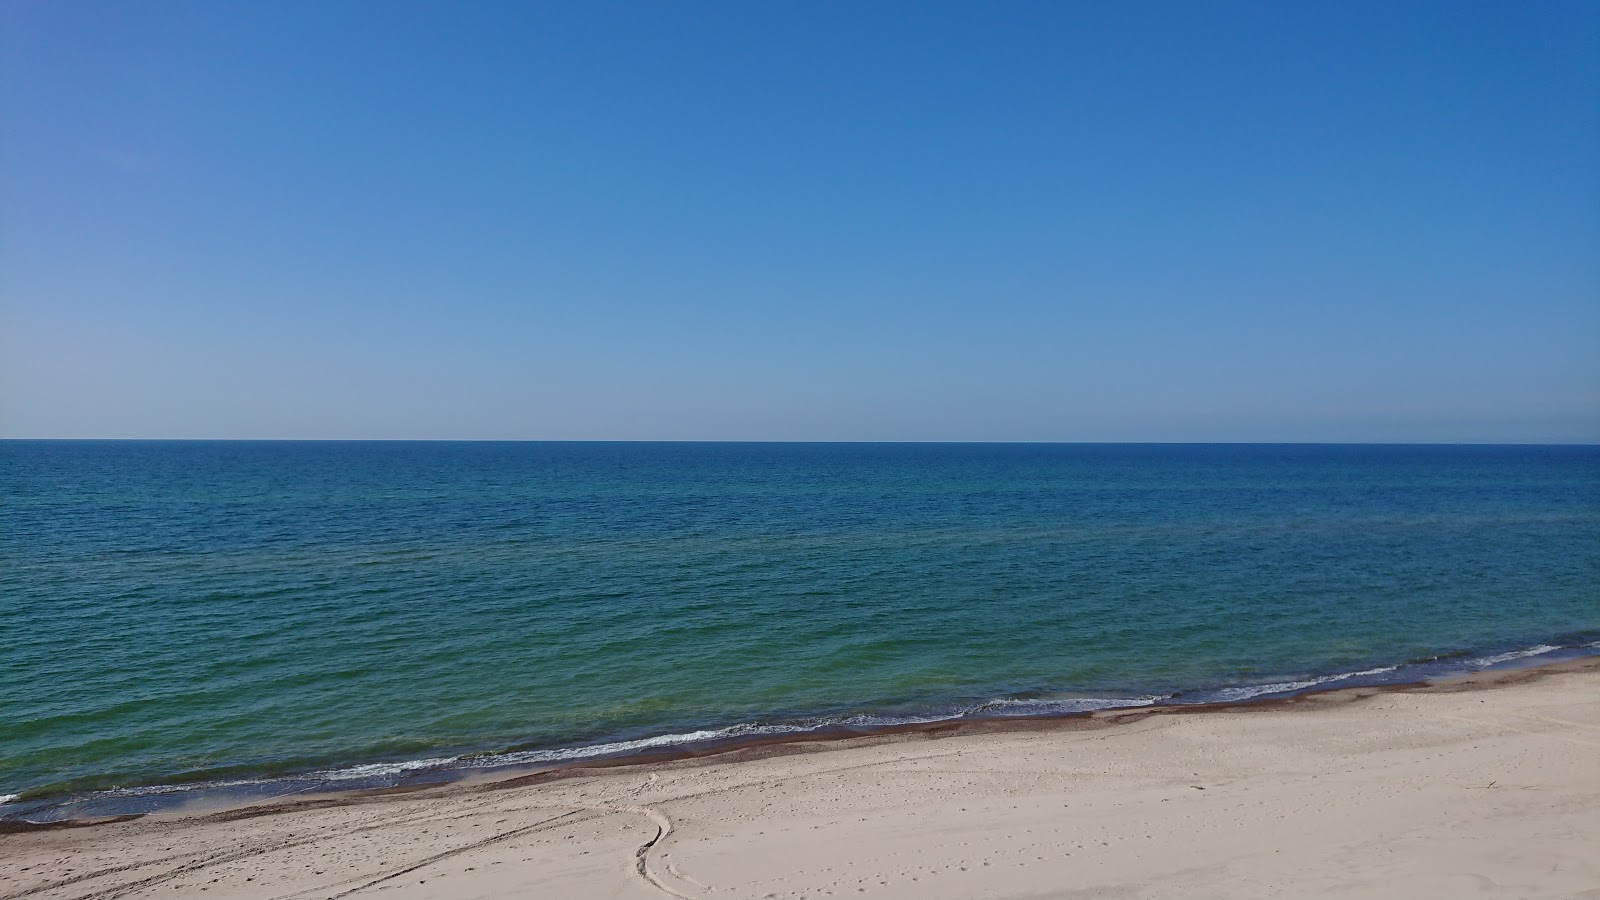 Fotografie cu Ledowo Beach - locul popular printre cunoscătorii de relaxare